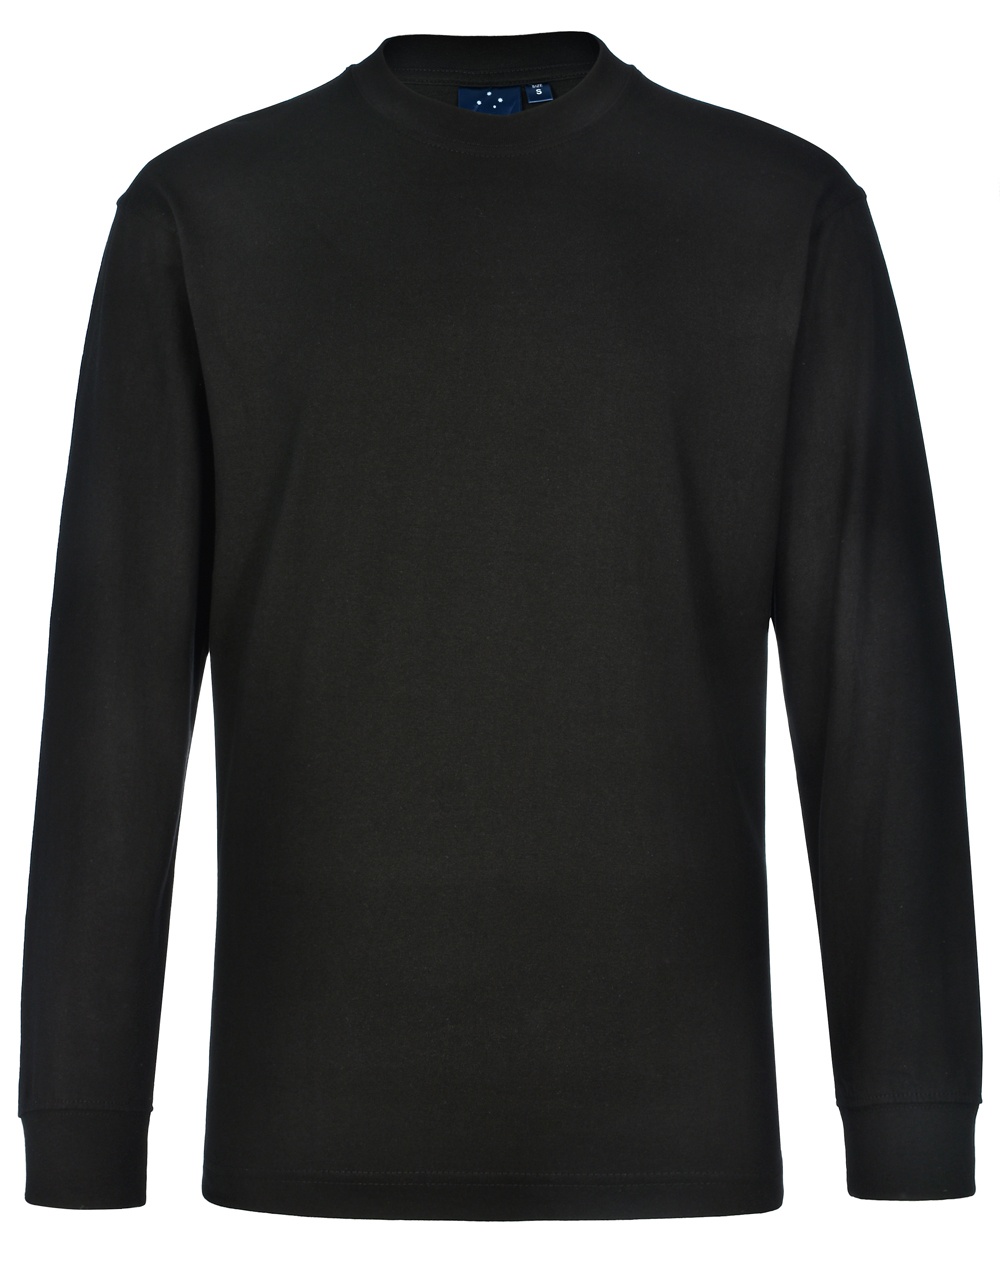 Custom Made (White) Men's London Long Sleeve Crew Neck T-Shirts Online Australia